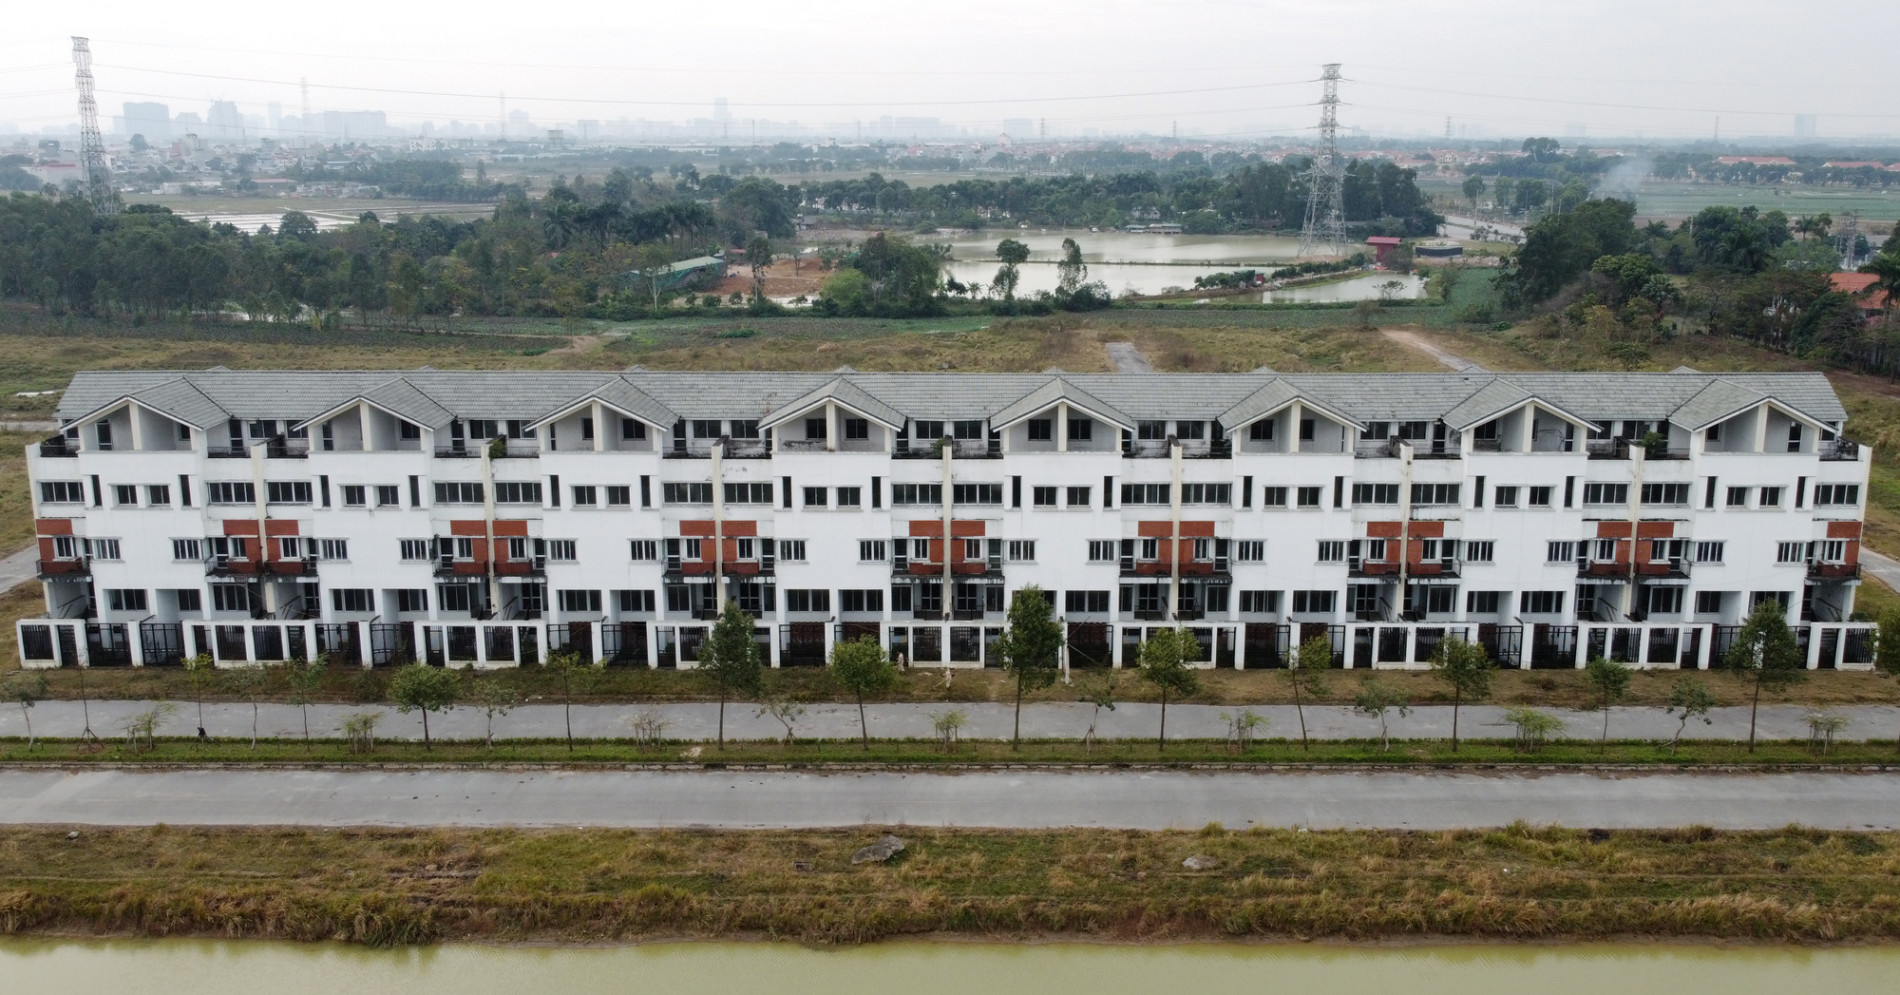 Toàn cảnh 6 dự án chậm triển khai ở huyện Mê Linh sắp tái triển khai - Ảnh 10.